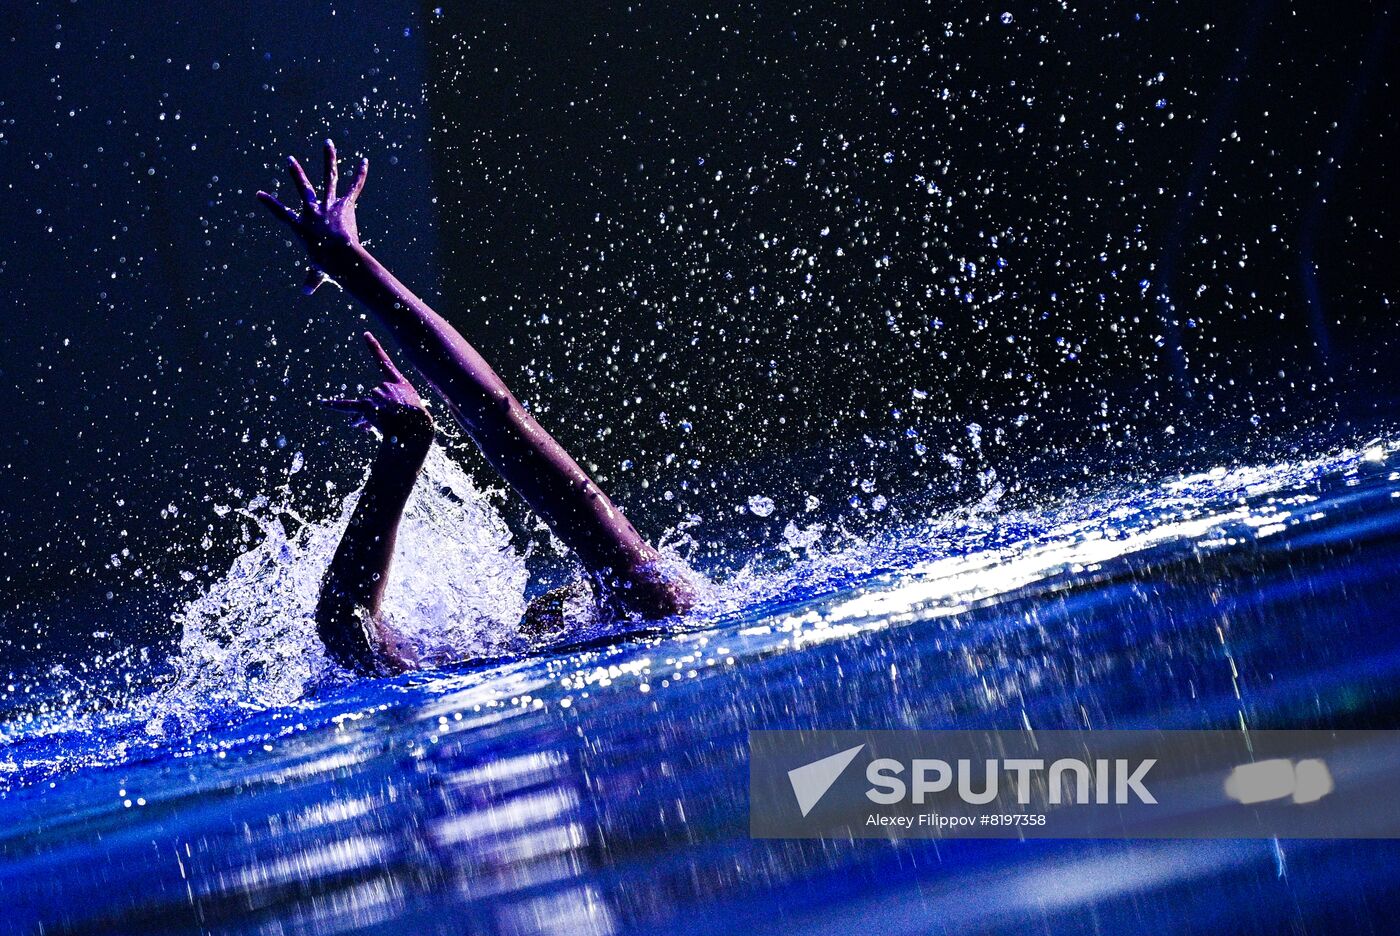 Russia Artistic Swimming Festival